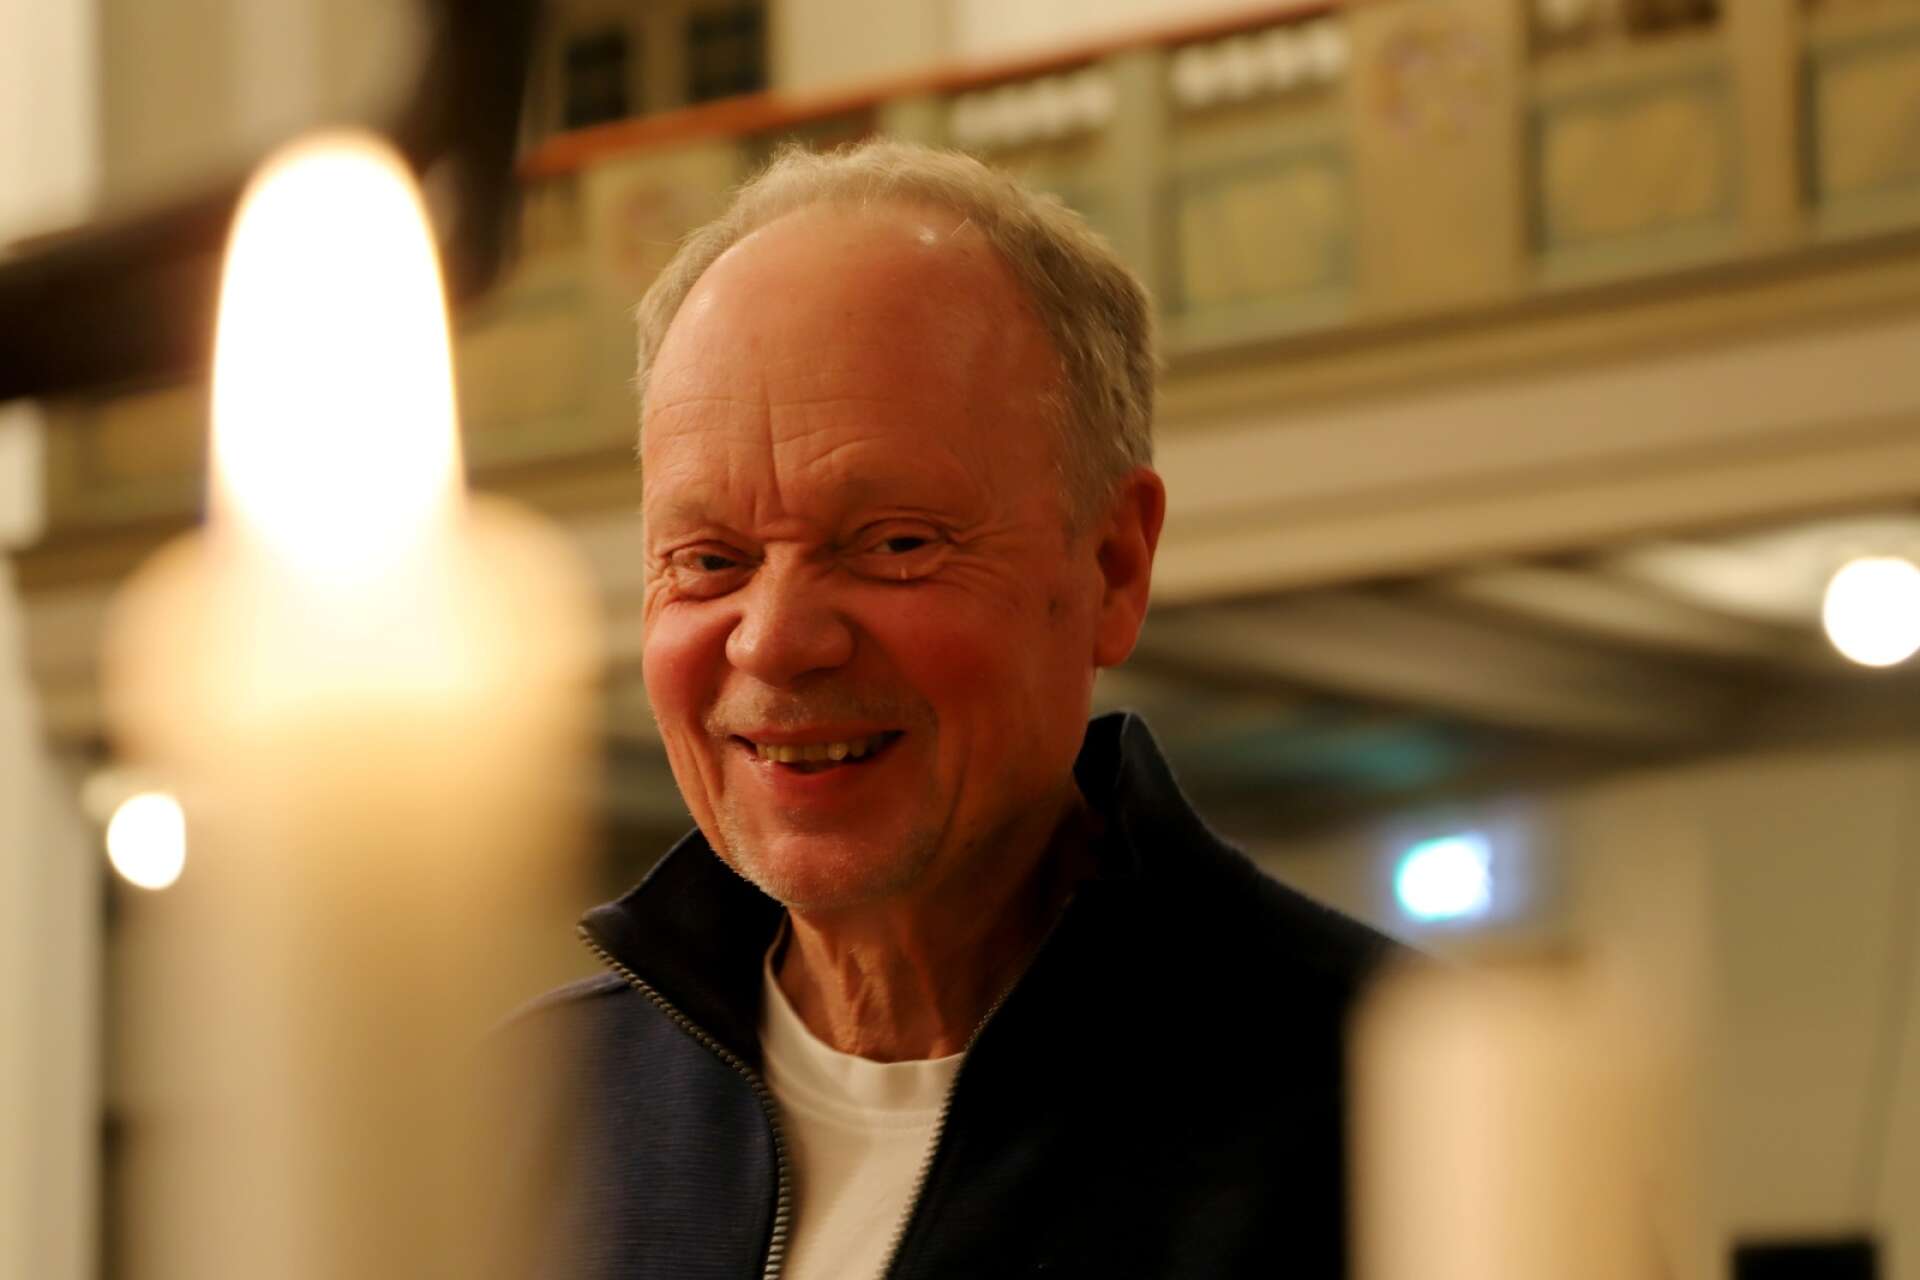 Anders Göranzon är stiftsmusiker och ledare för Karlstads kammarkör. ”Det enkla svaret är att musiken alltid betyder allt”, svarar han på frågan vad musiken betyder för julen.